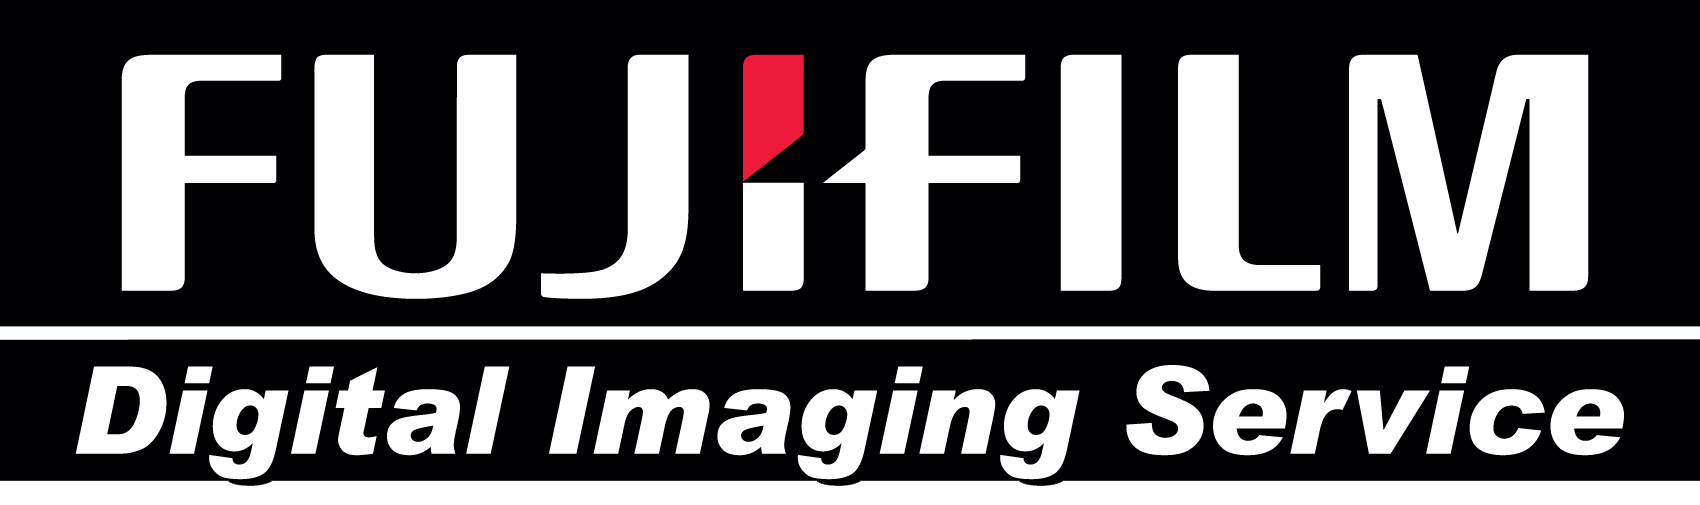 Fujifilm Logo - FUJIFILM-LOGO -